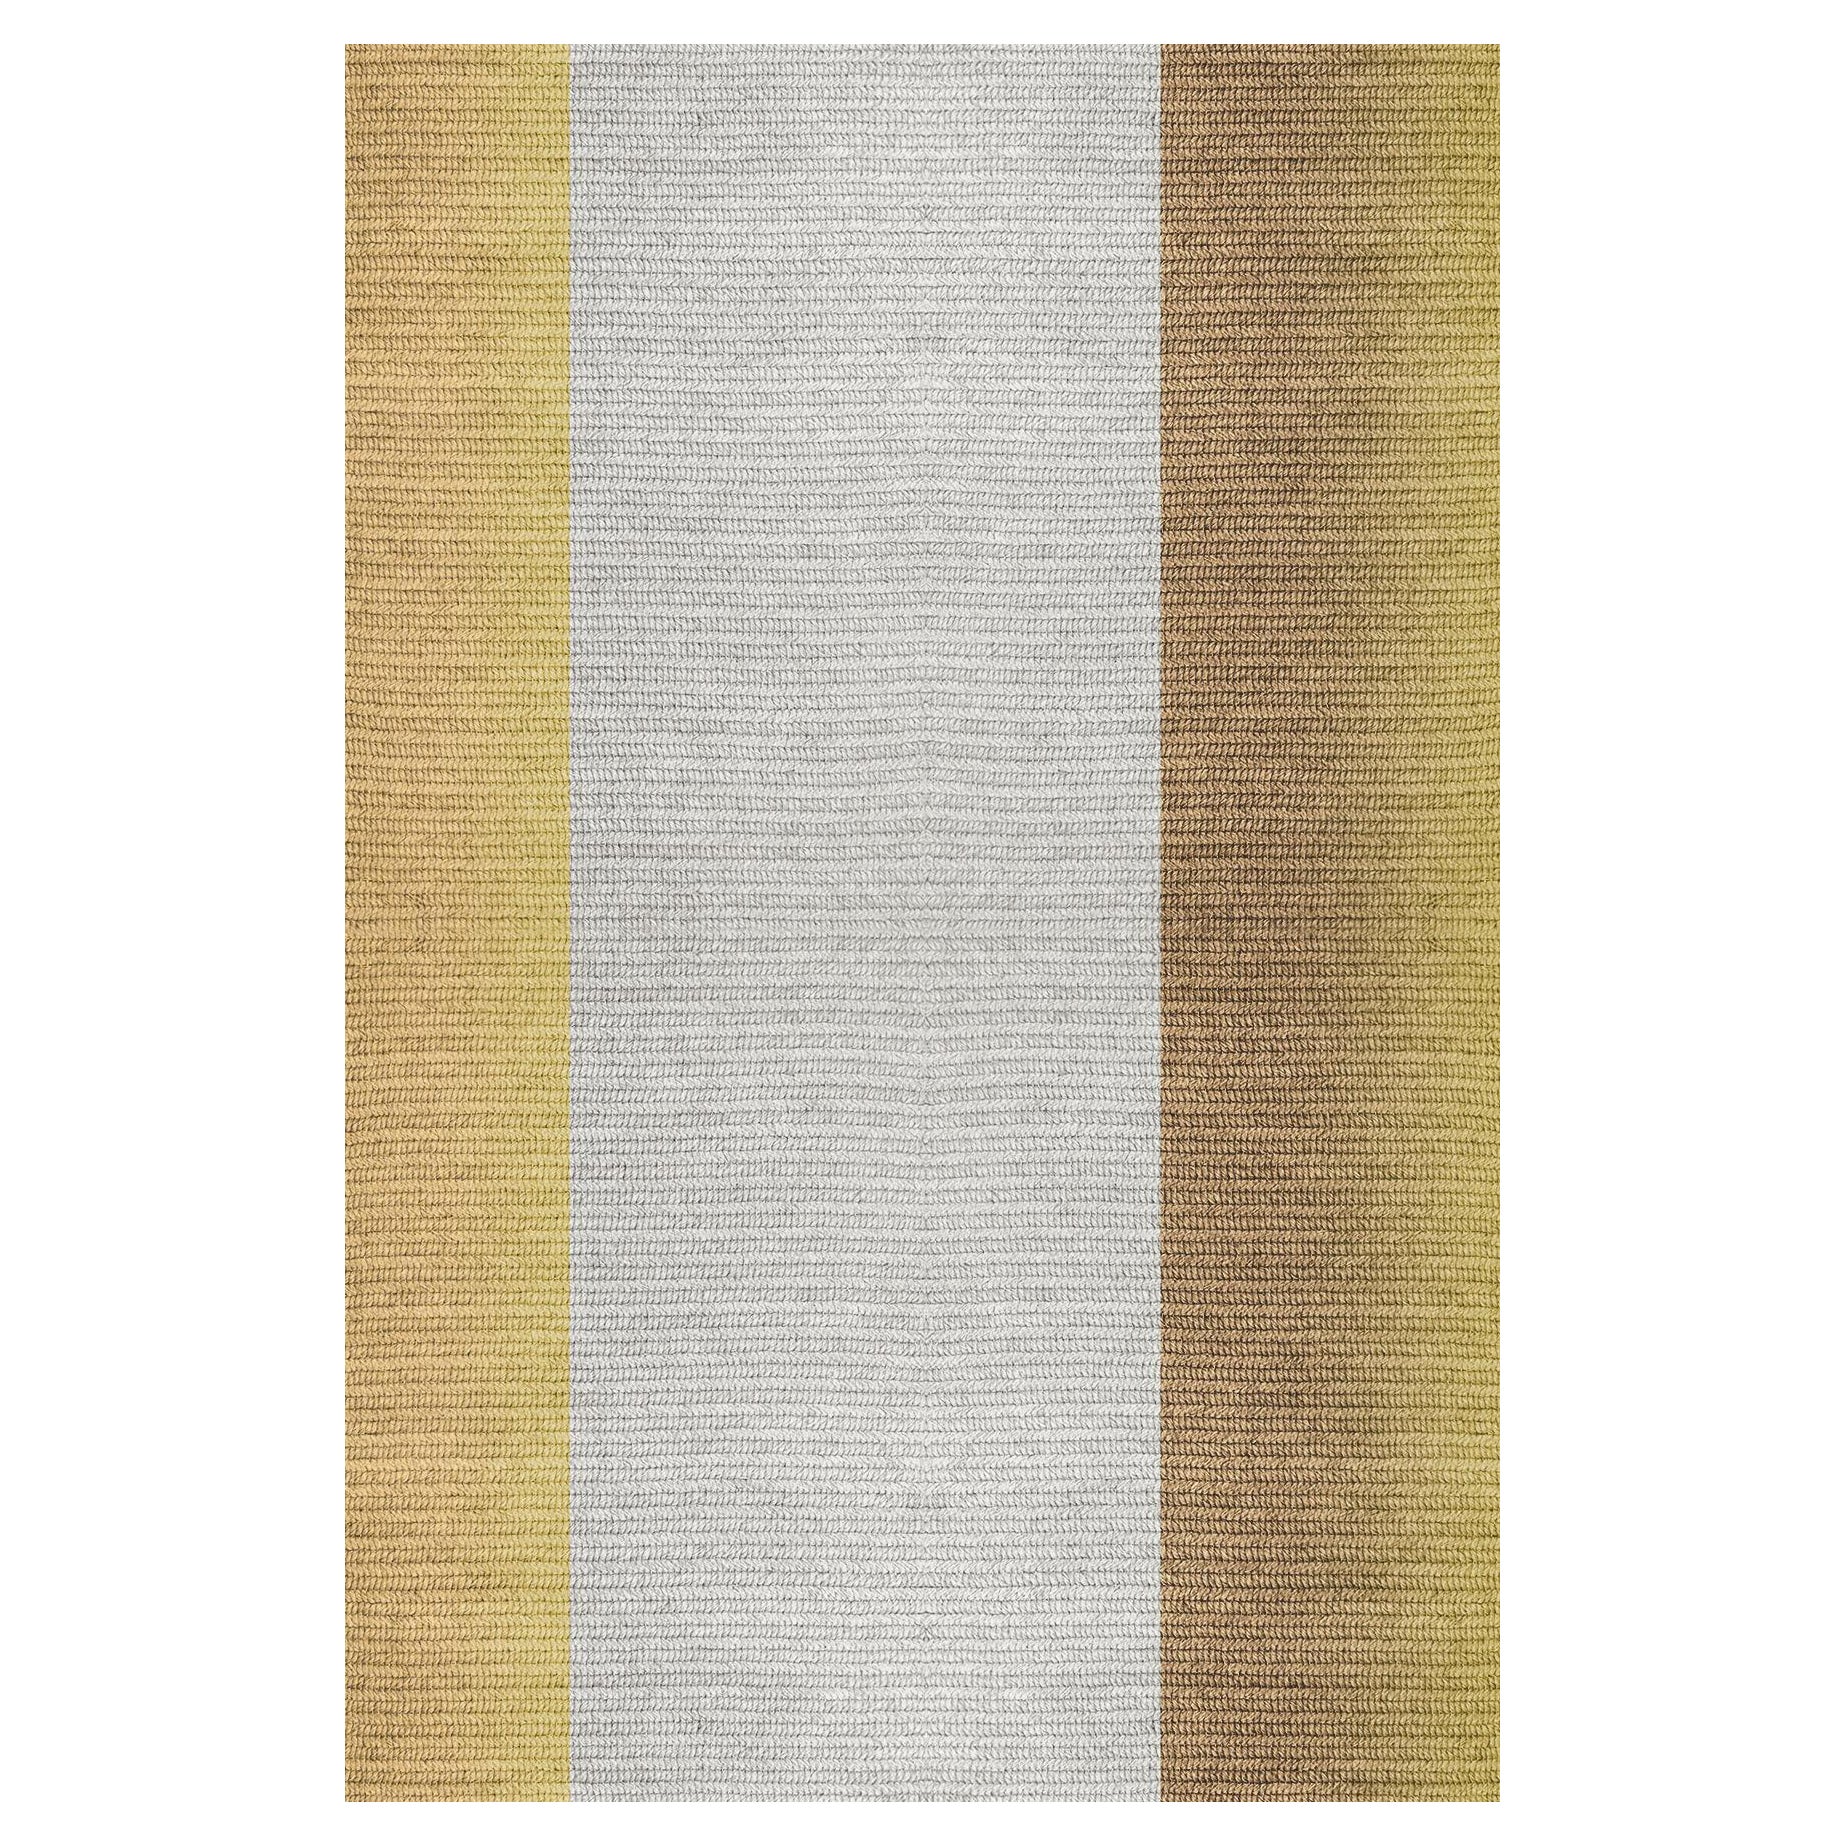 Teppich „Blur“ ausbaca, Farbe „Pampas“, 200x300 cm, von Claire Vos für Musett Design